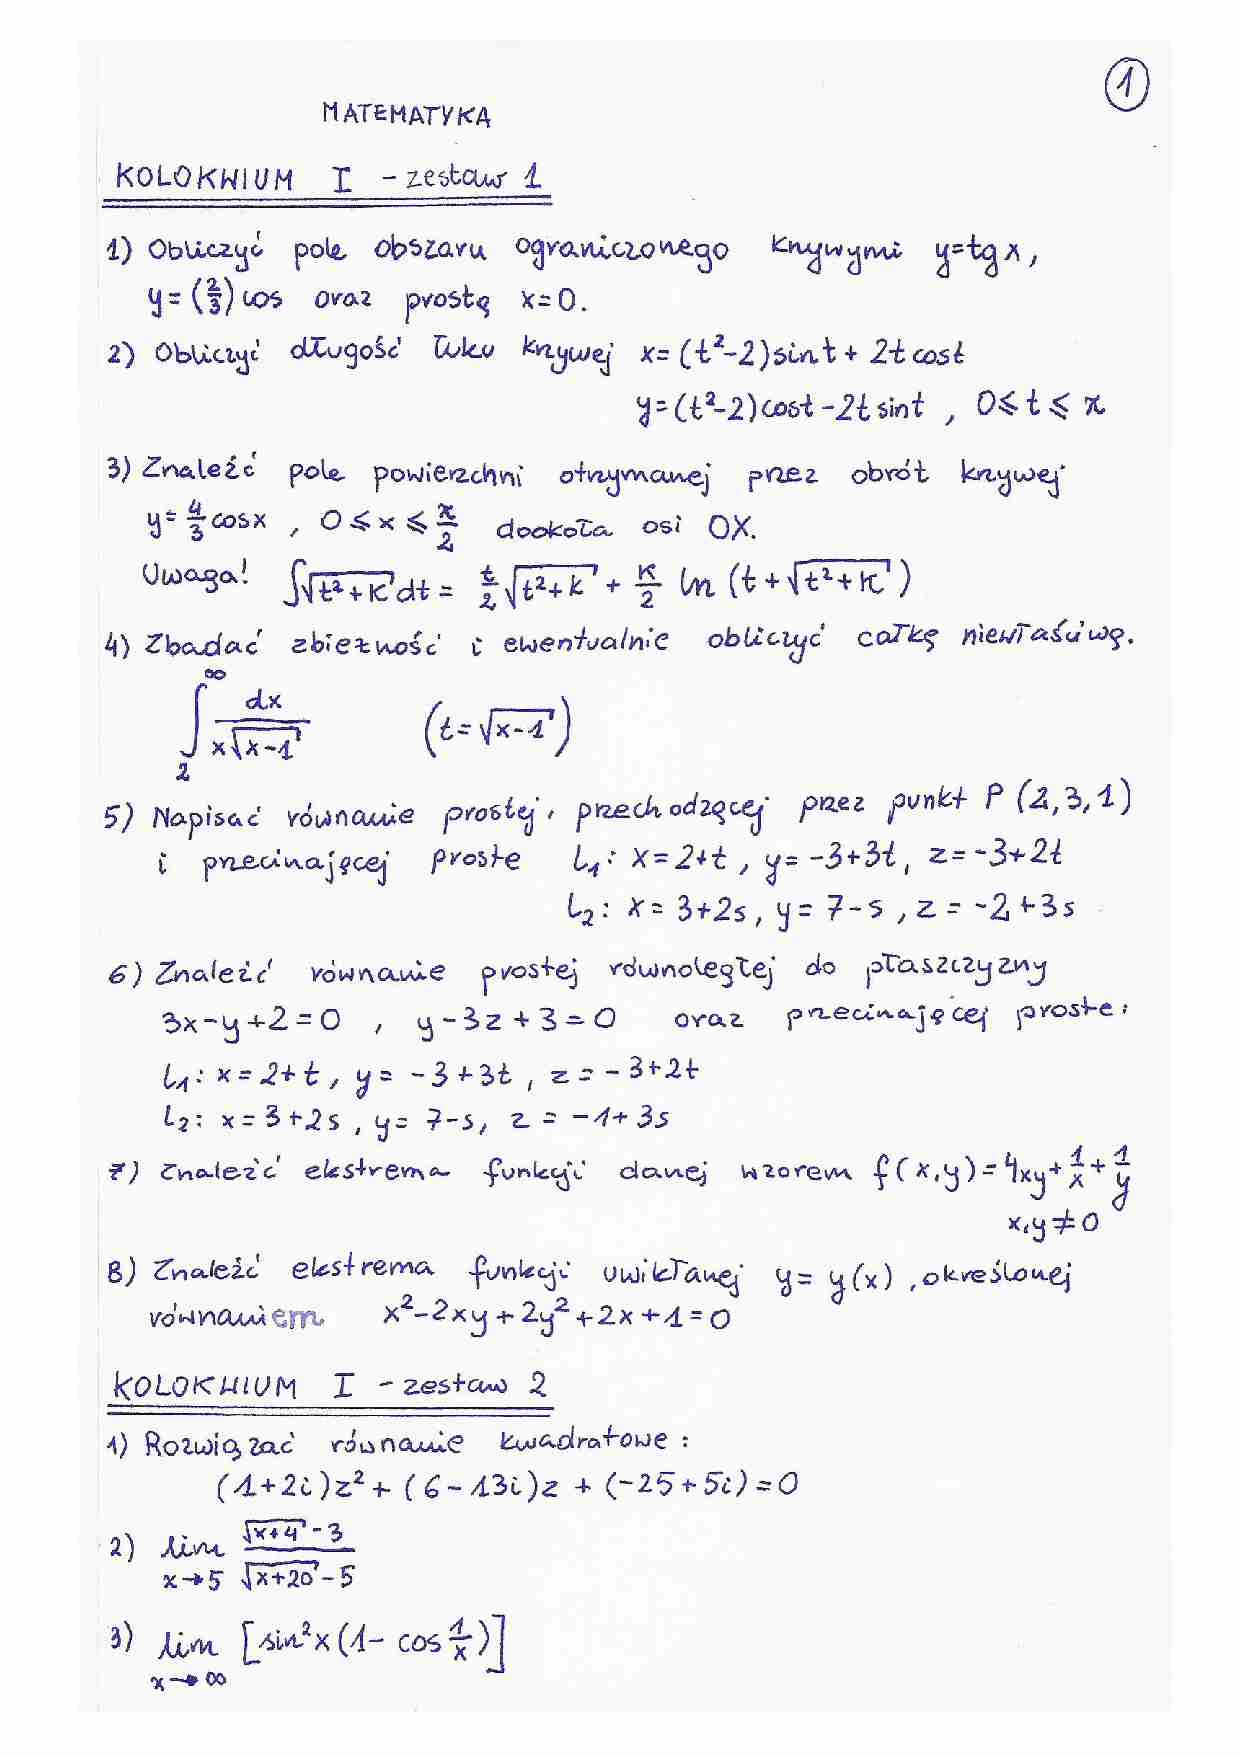 Przykładowe zadania na kolokwium z matematyki - strona 1